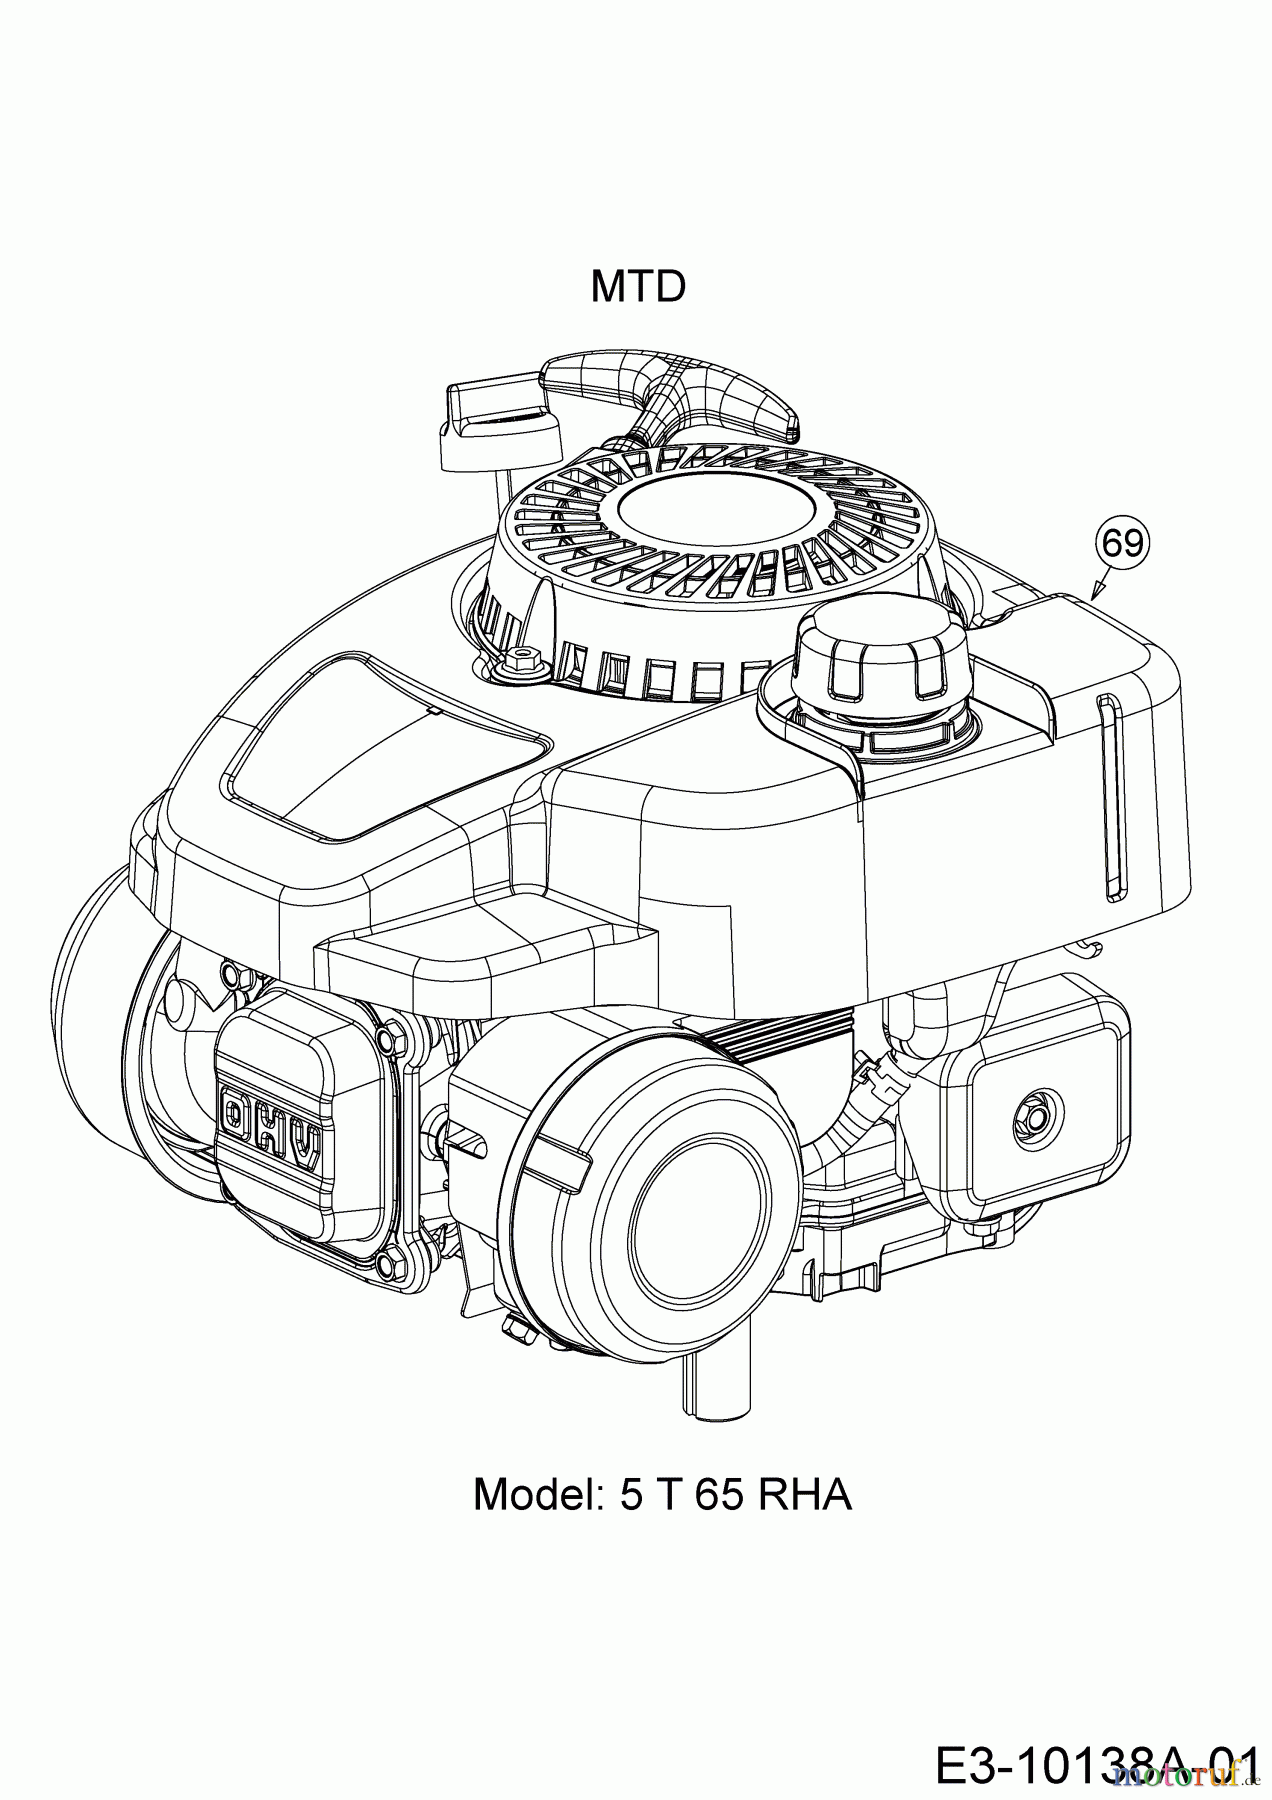  Wolf-Garten Motormäher A 4600 11A-TOSC650 (2020) Motor MTD